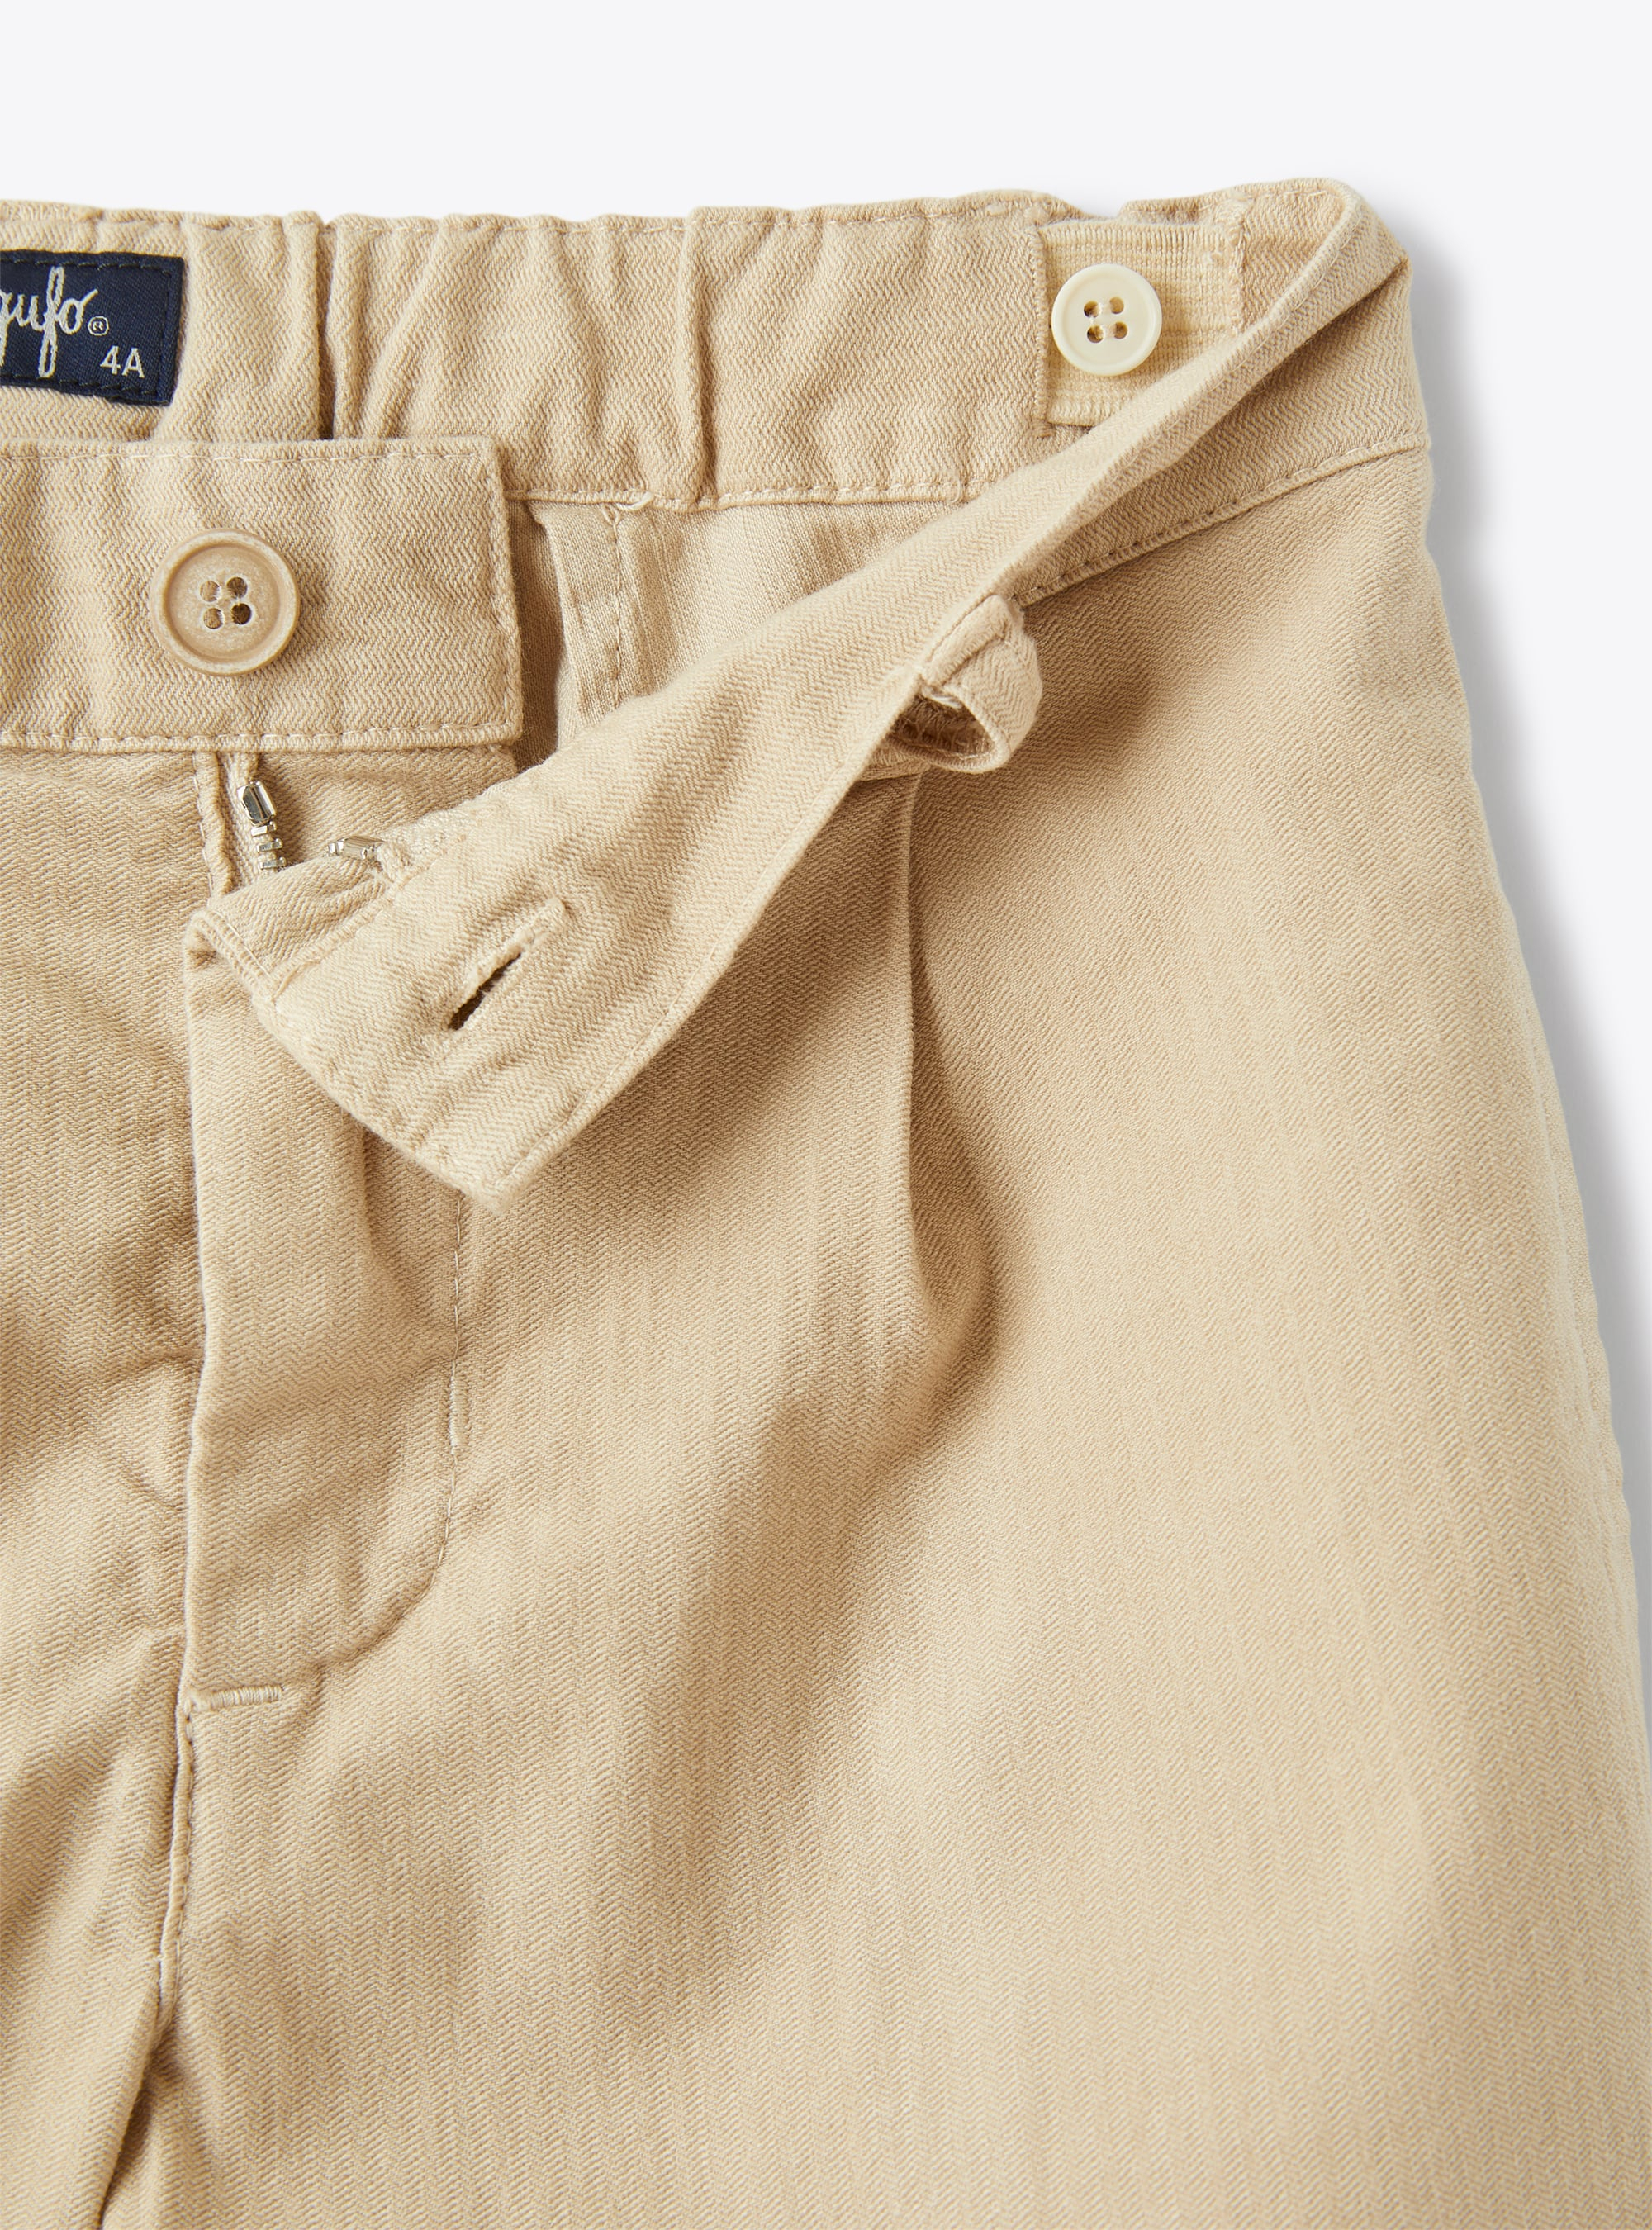 Bermuda shorts in herringbone-patterned stretch cotton - Brown | Il Gufo